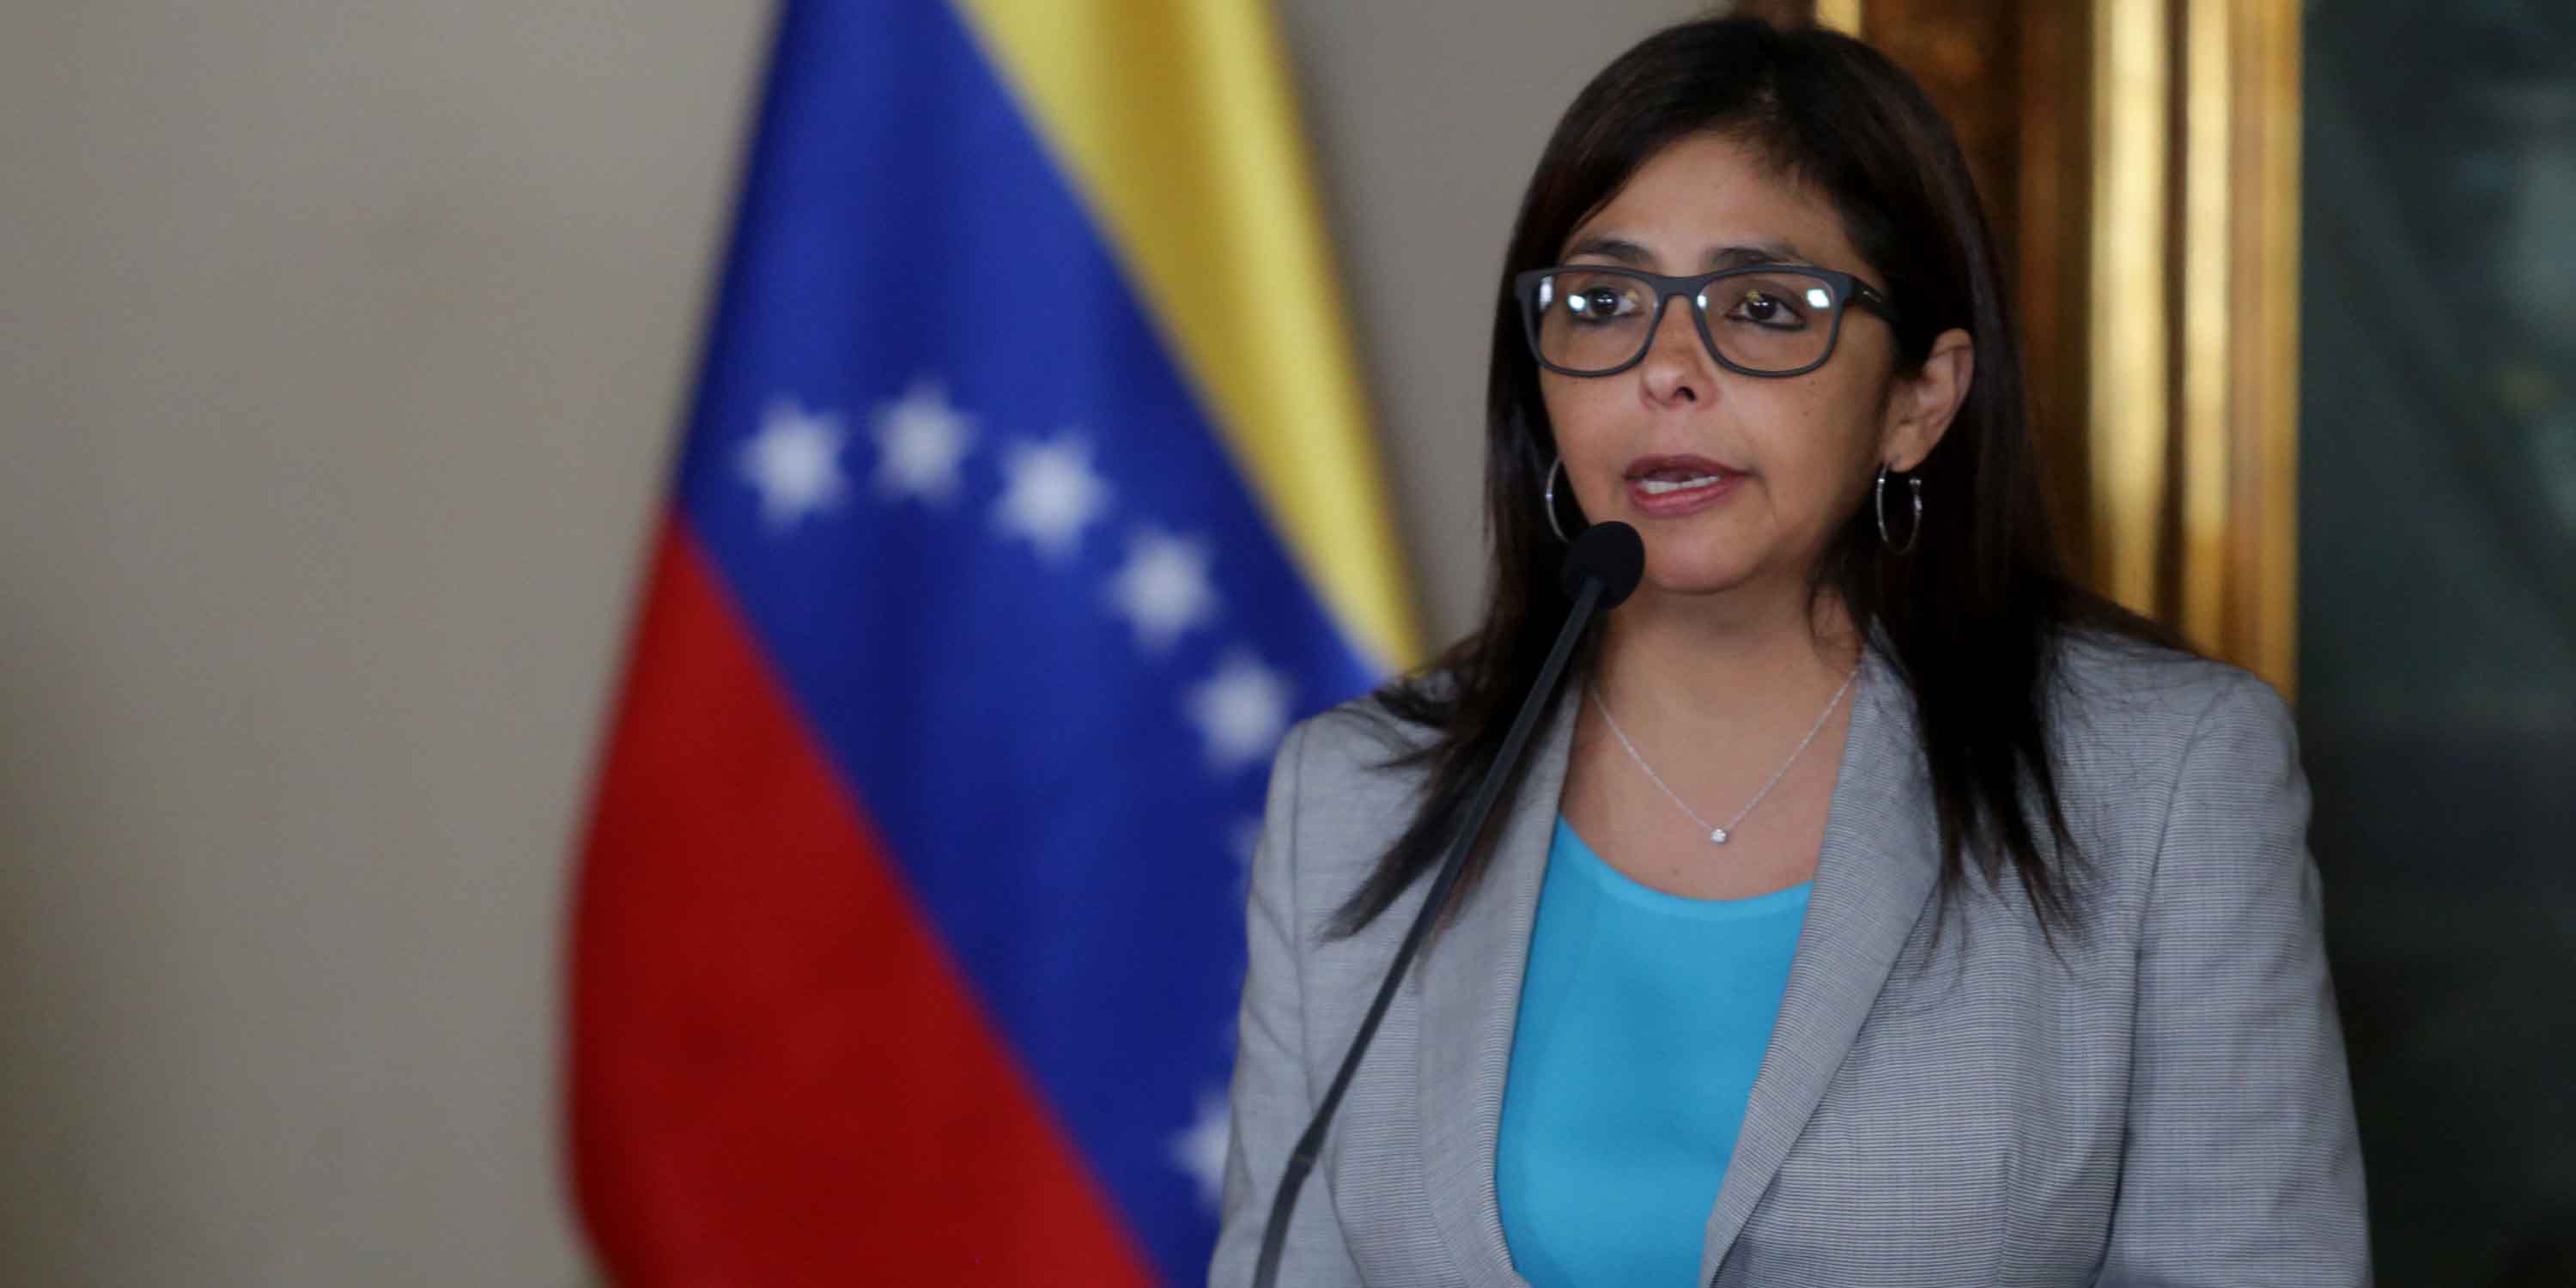 La ministra de Relaciones Exteriores de Venezuela, Delcy Rodríguez, criticó los ataques de Macri contra su país.